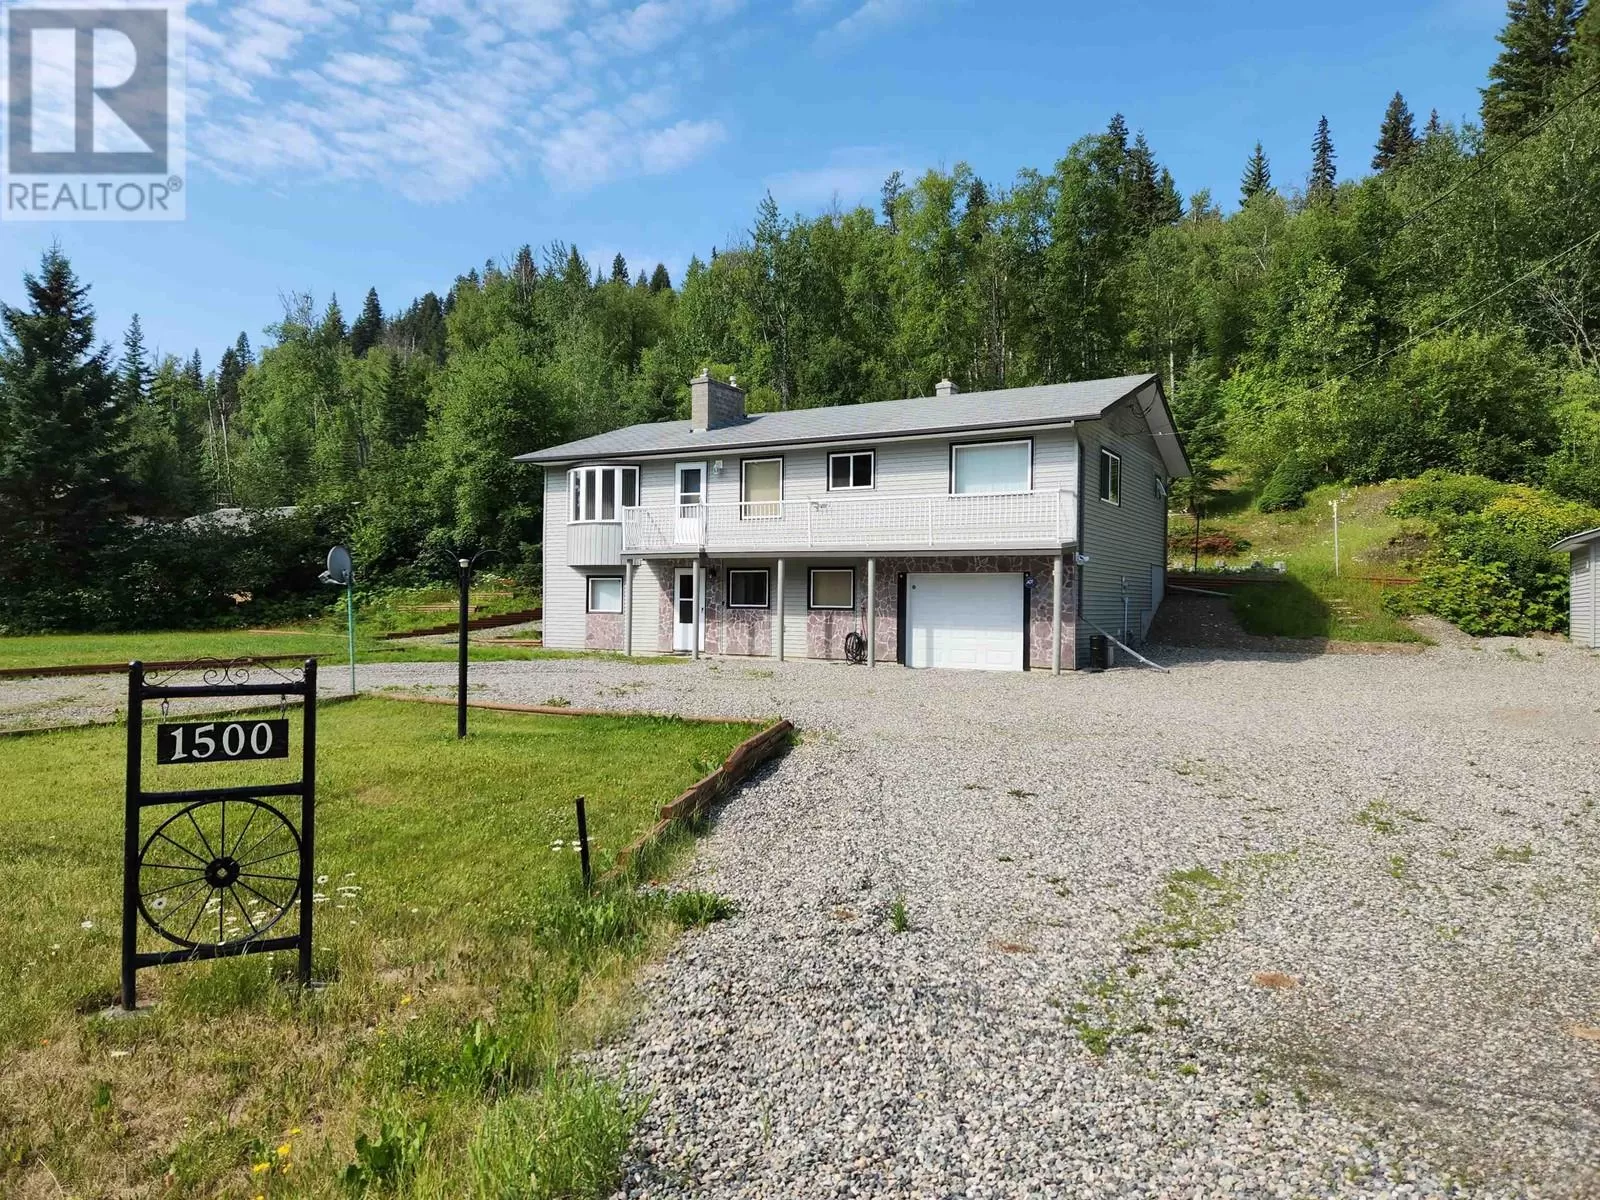 House for rent: 1500 West Fraser Road, Quesnel, British Columbia V2J 6J1